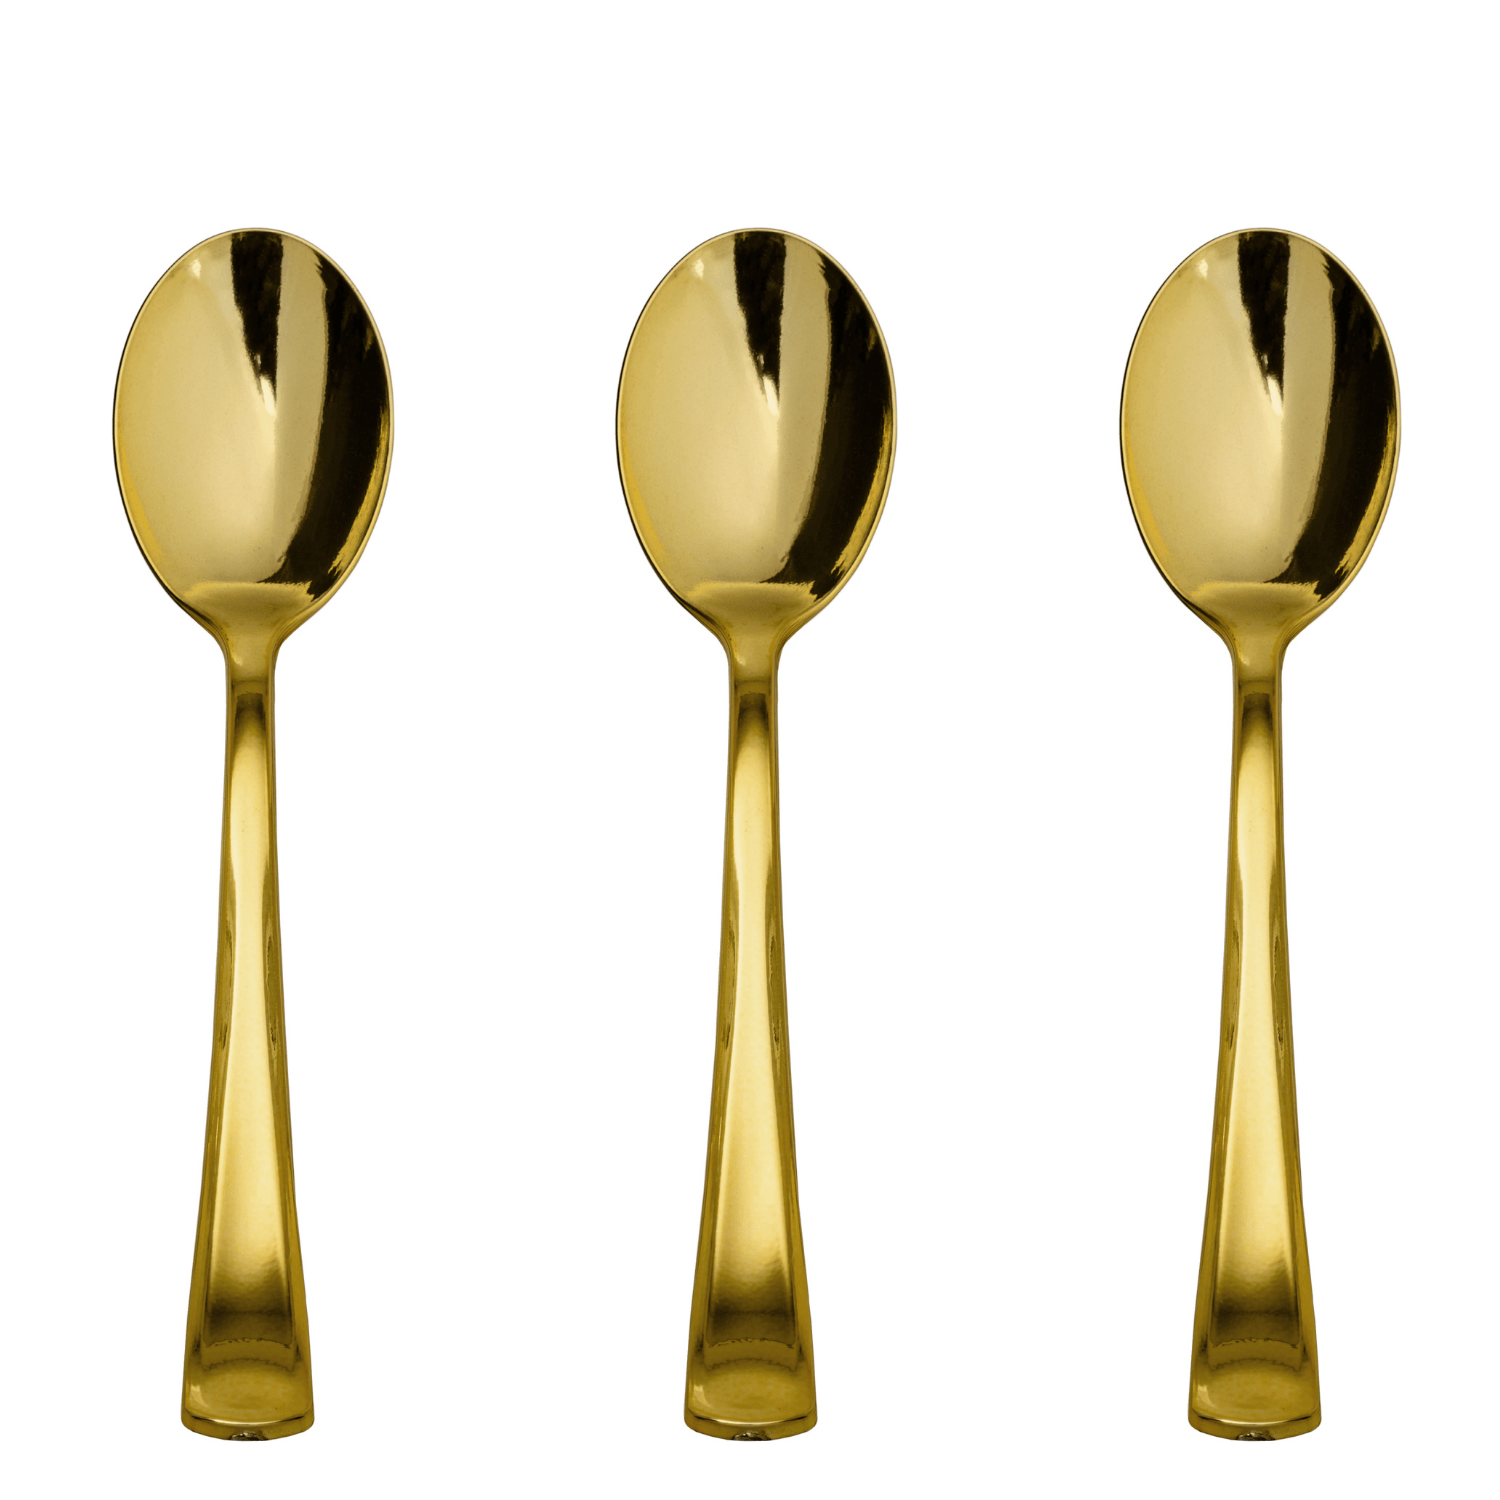 Exquisite Gold Plastic Spoons | 480 Count